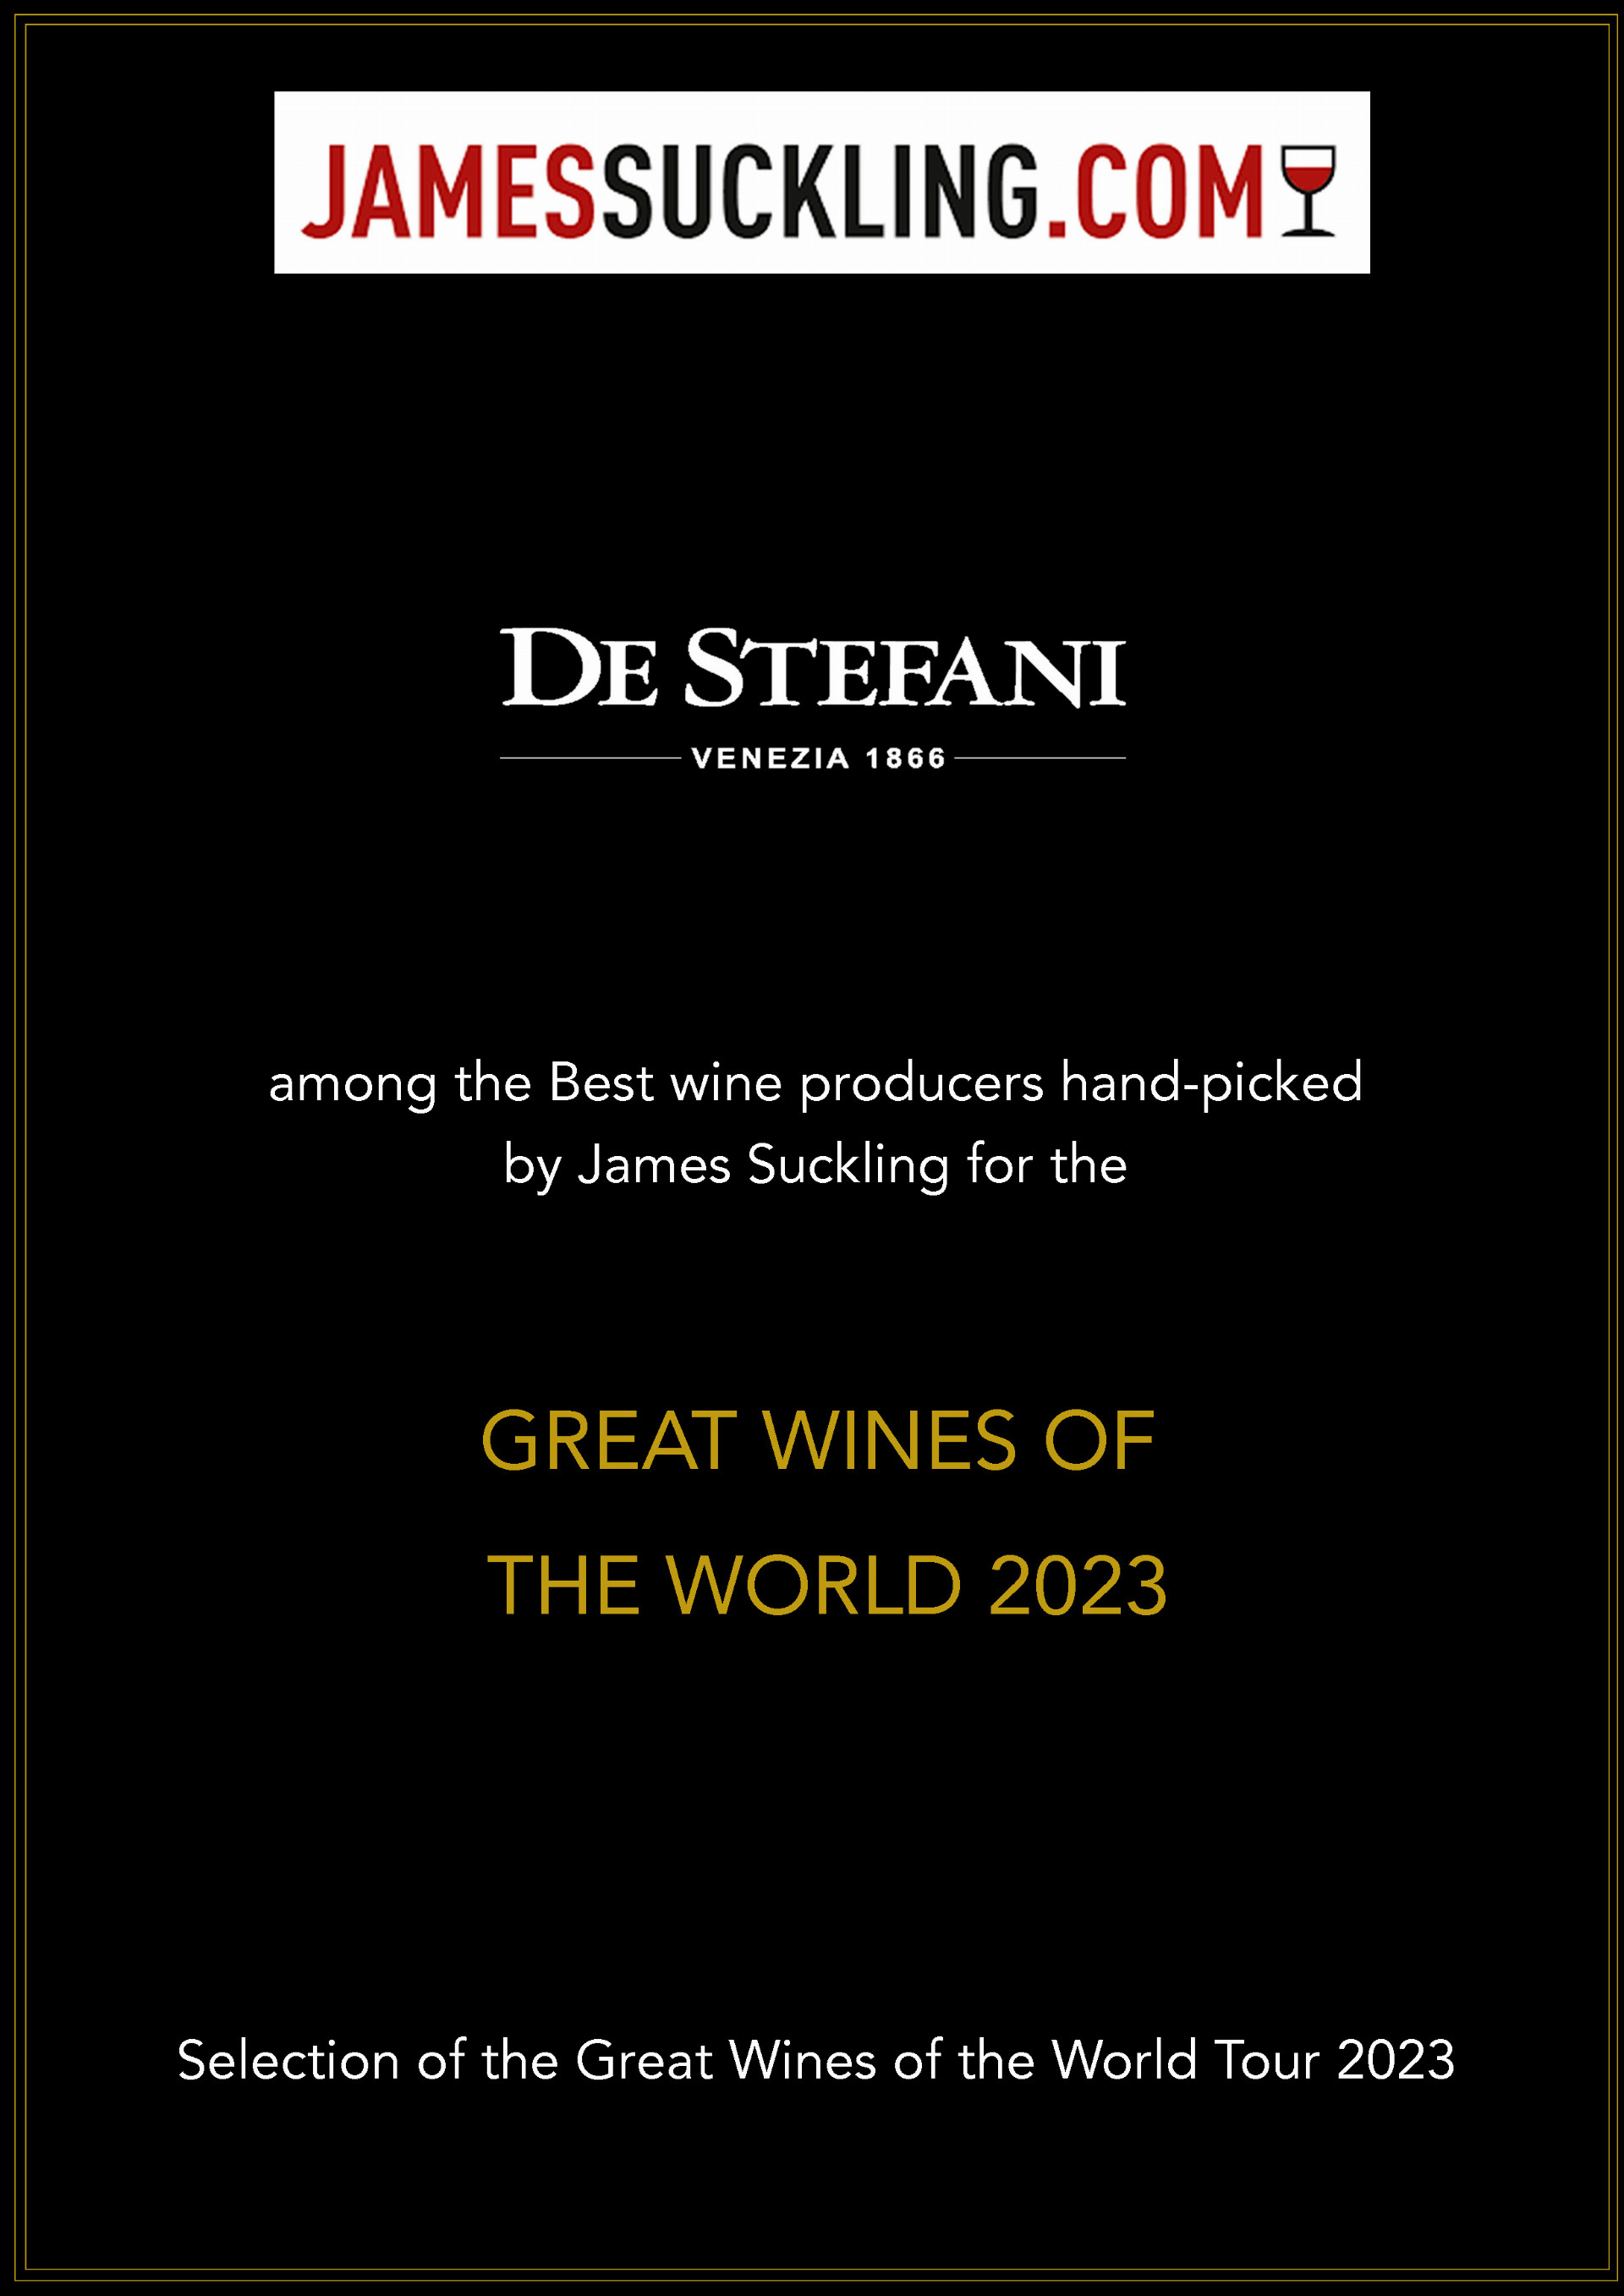 De Stefani ve výběru “Great Wines of the World 2023”